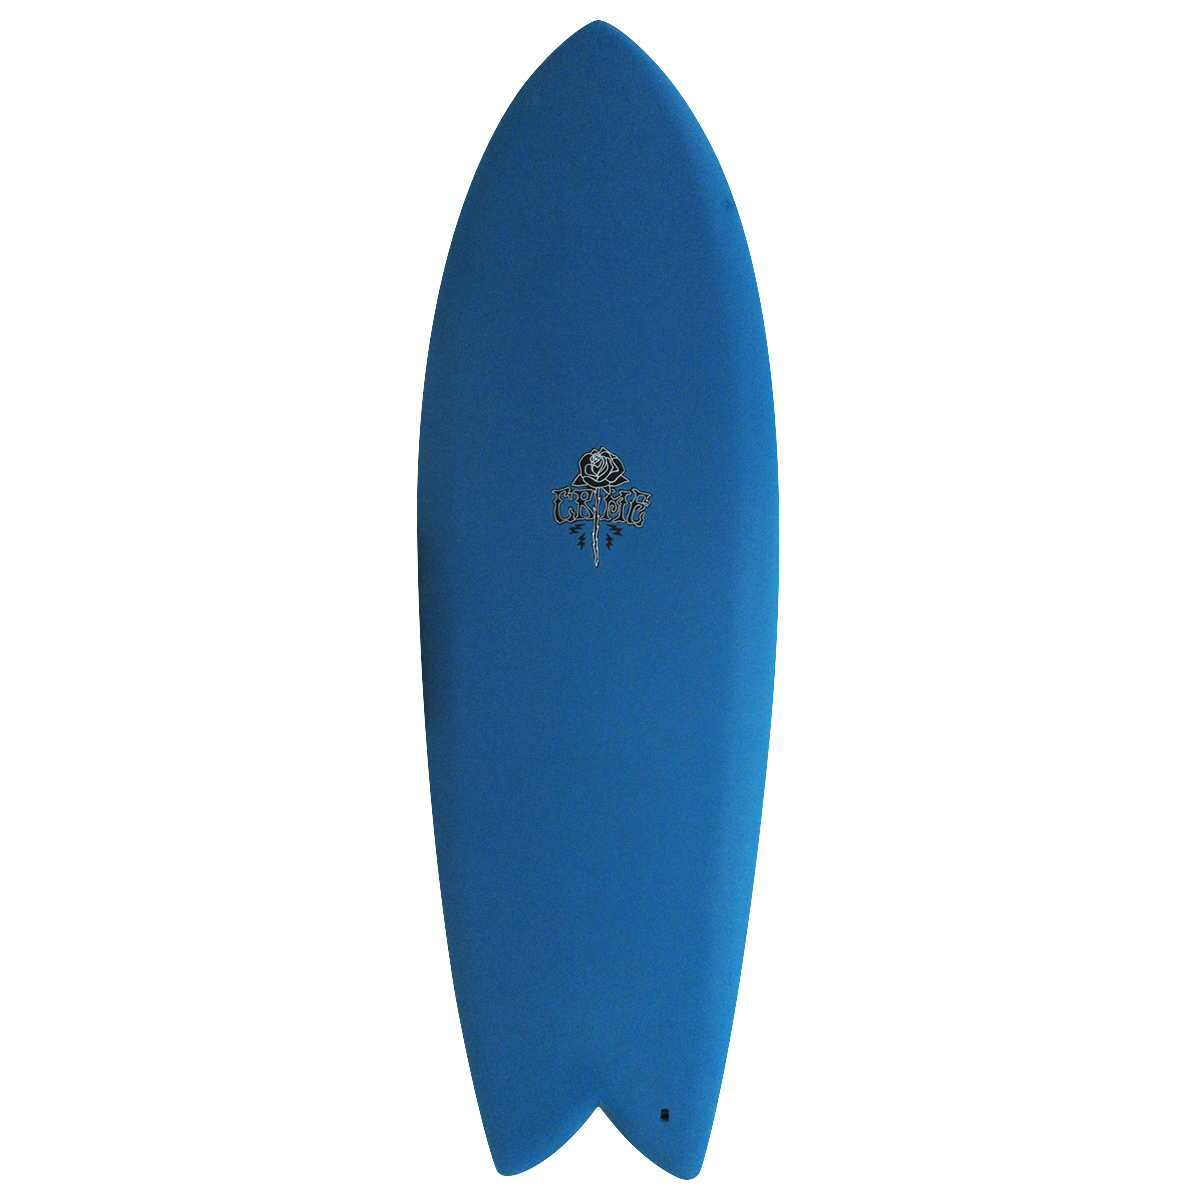 crime surf board クライムサーフボード - サーフィン・ボディボード